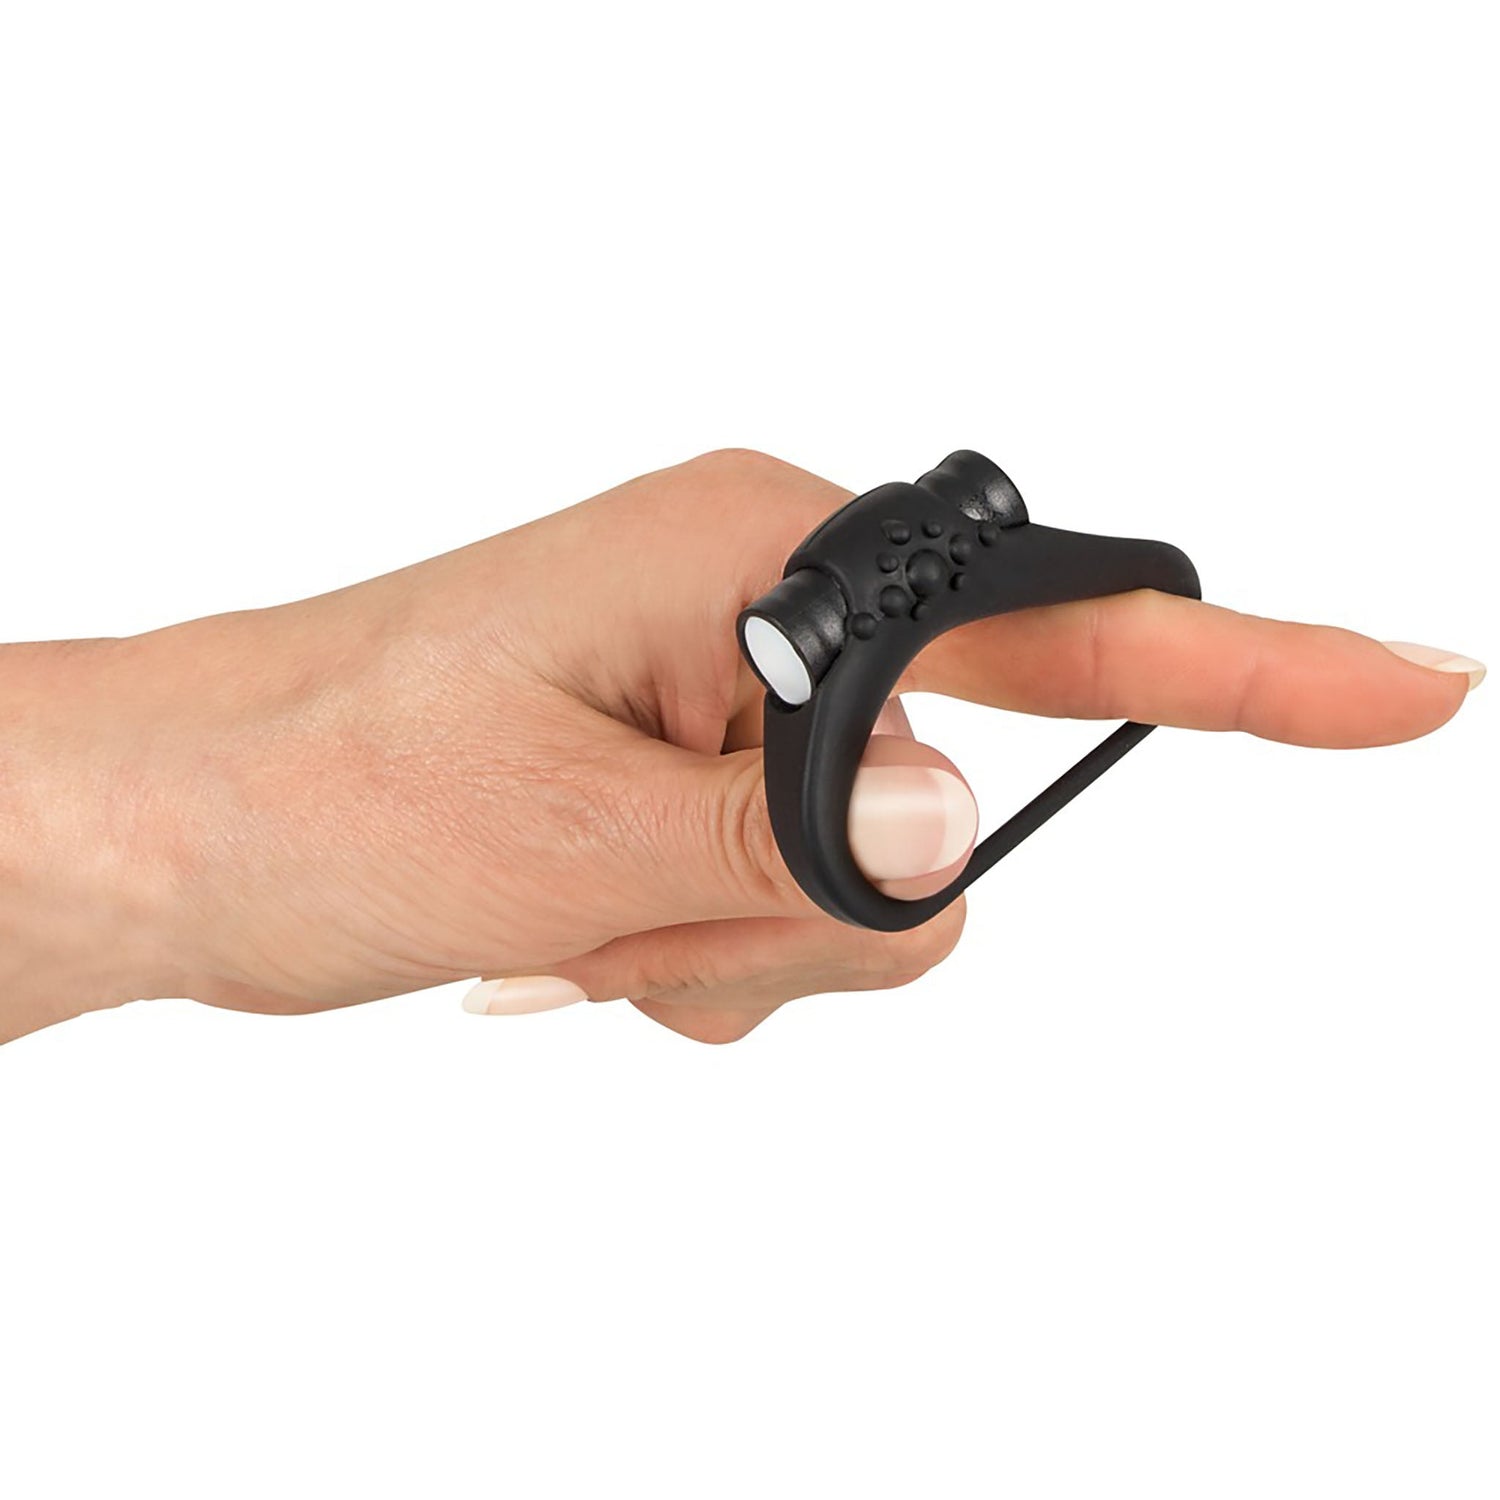 Vibrierender Penisring in schwarz auf einer Hand